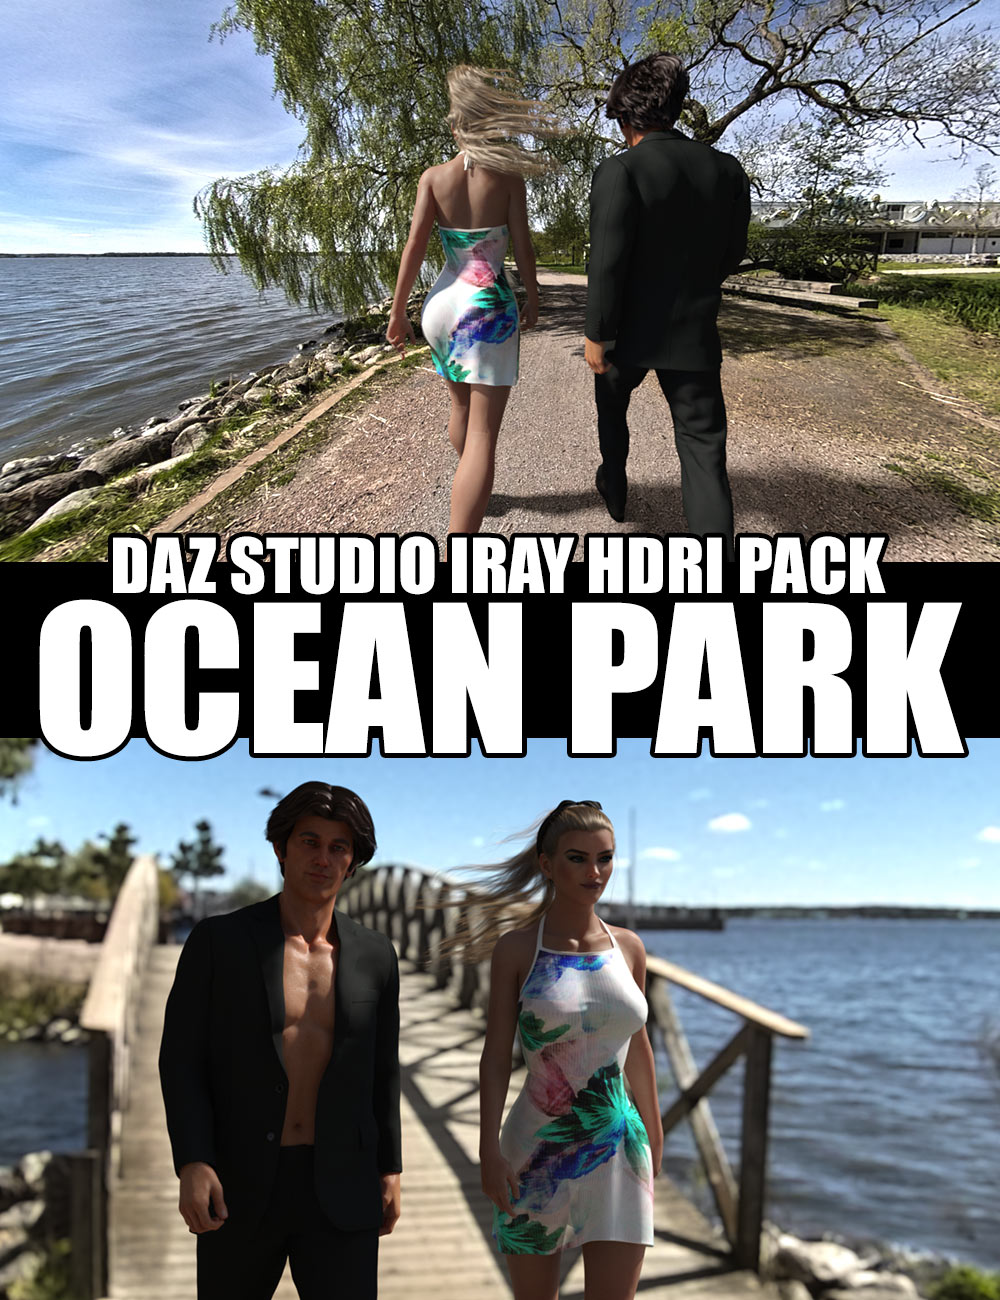 Ocean Park - DAZ Studio Iray HDRI Pack by: Dreamlight, 3D Models by Daz 3D